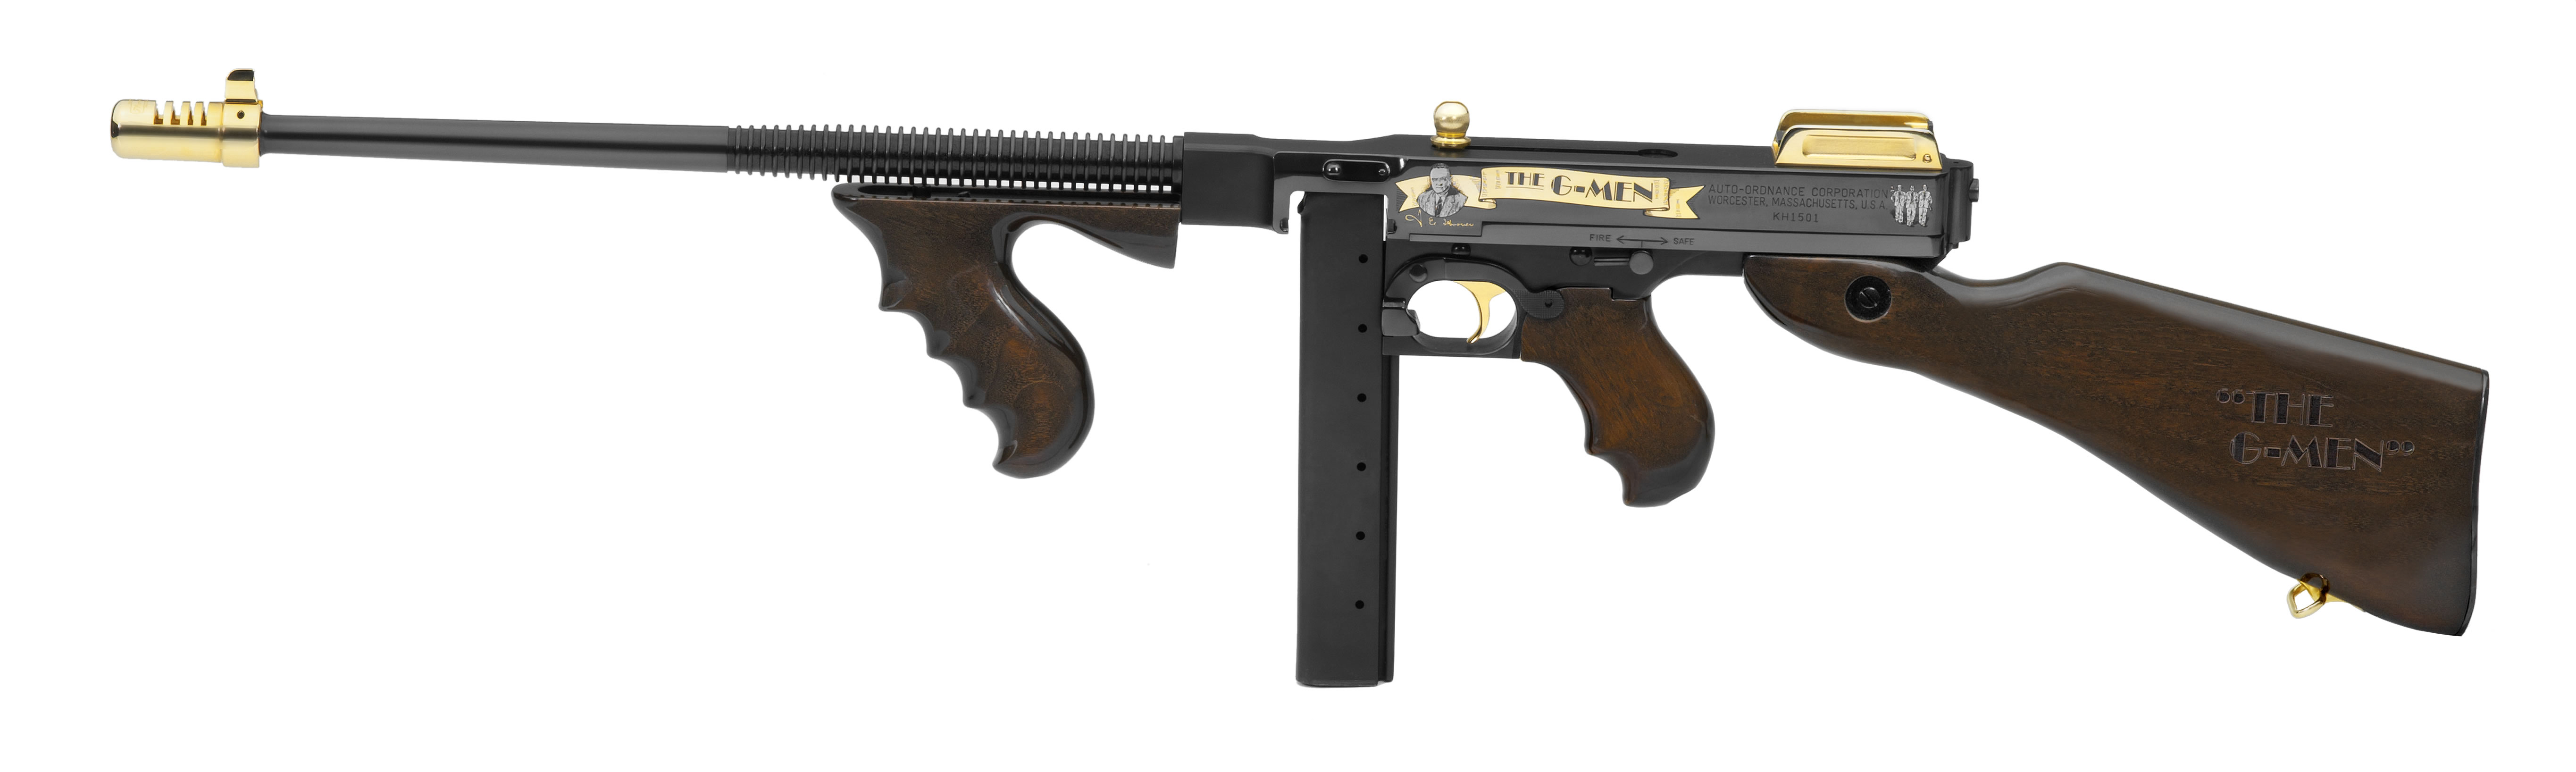 Thompson Submachine Gun #20